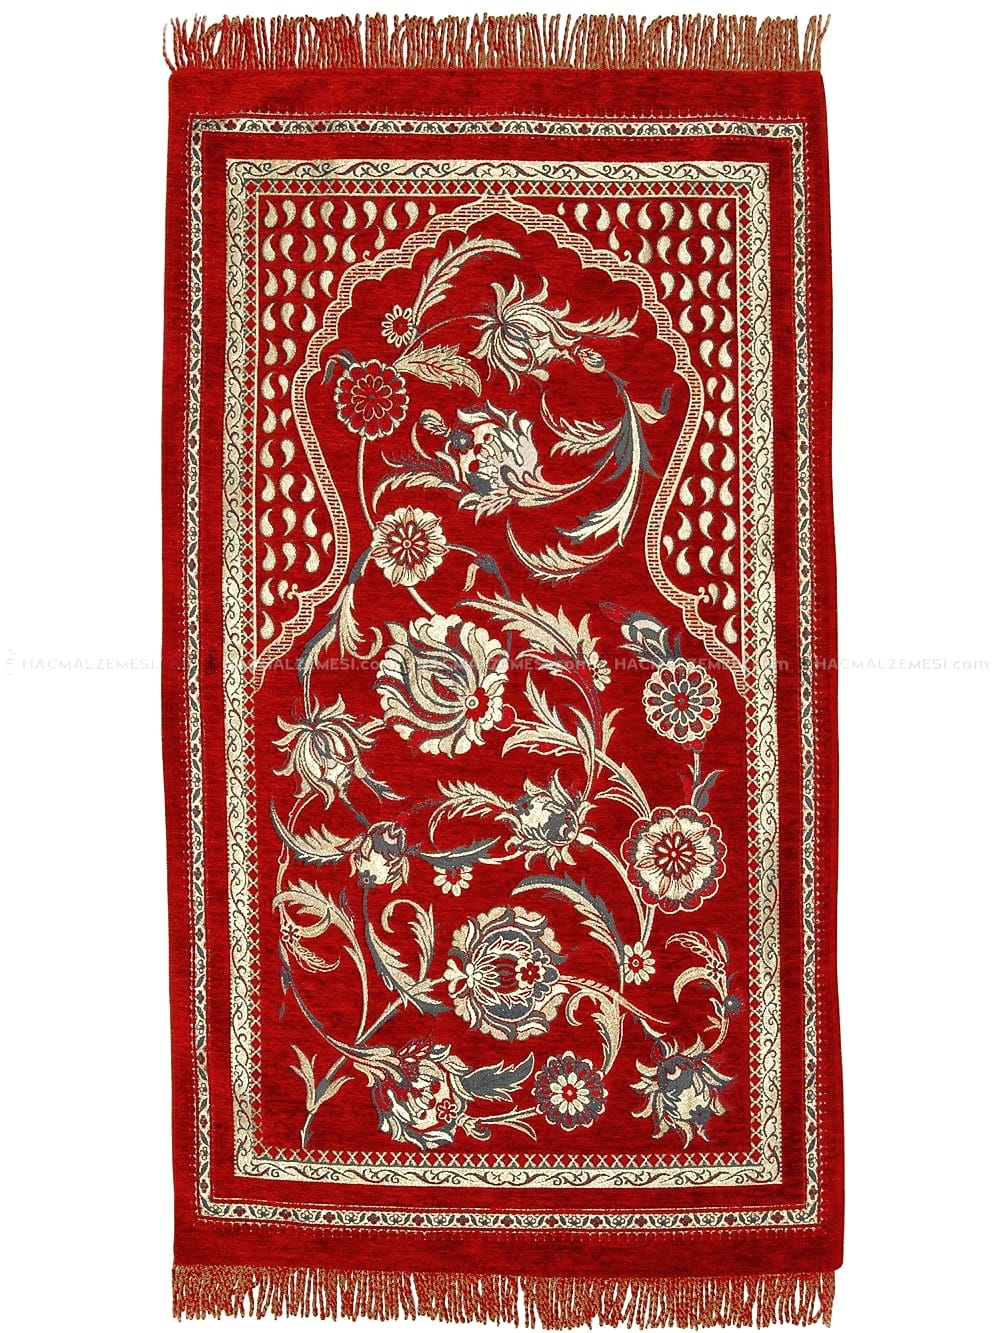 Tapis De Prière musulmane De luxe, aspect soie, en tissu doux tissé  authentique, pour pied turc, Sijadet Sala - AliExpress